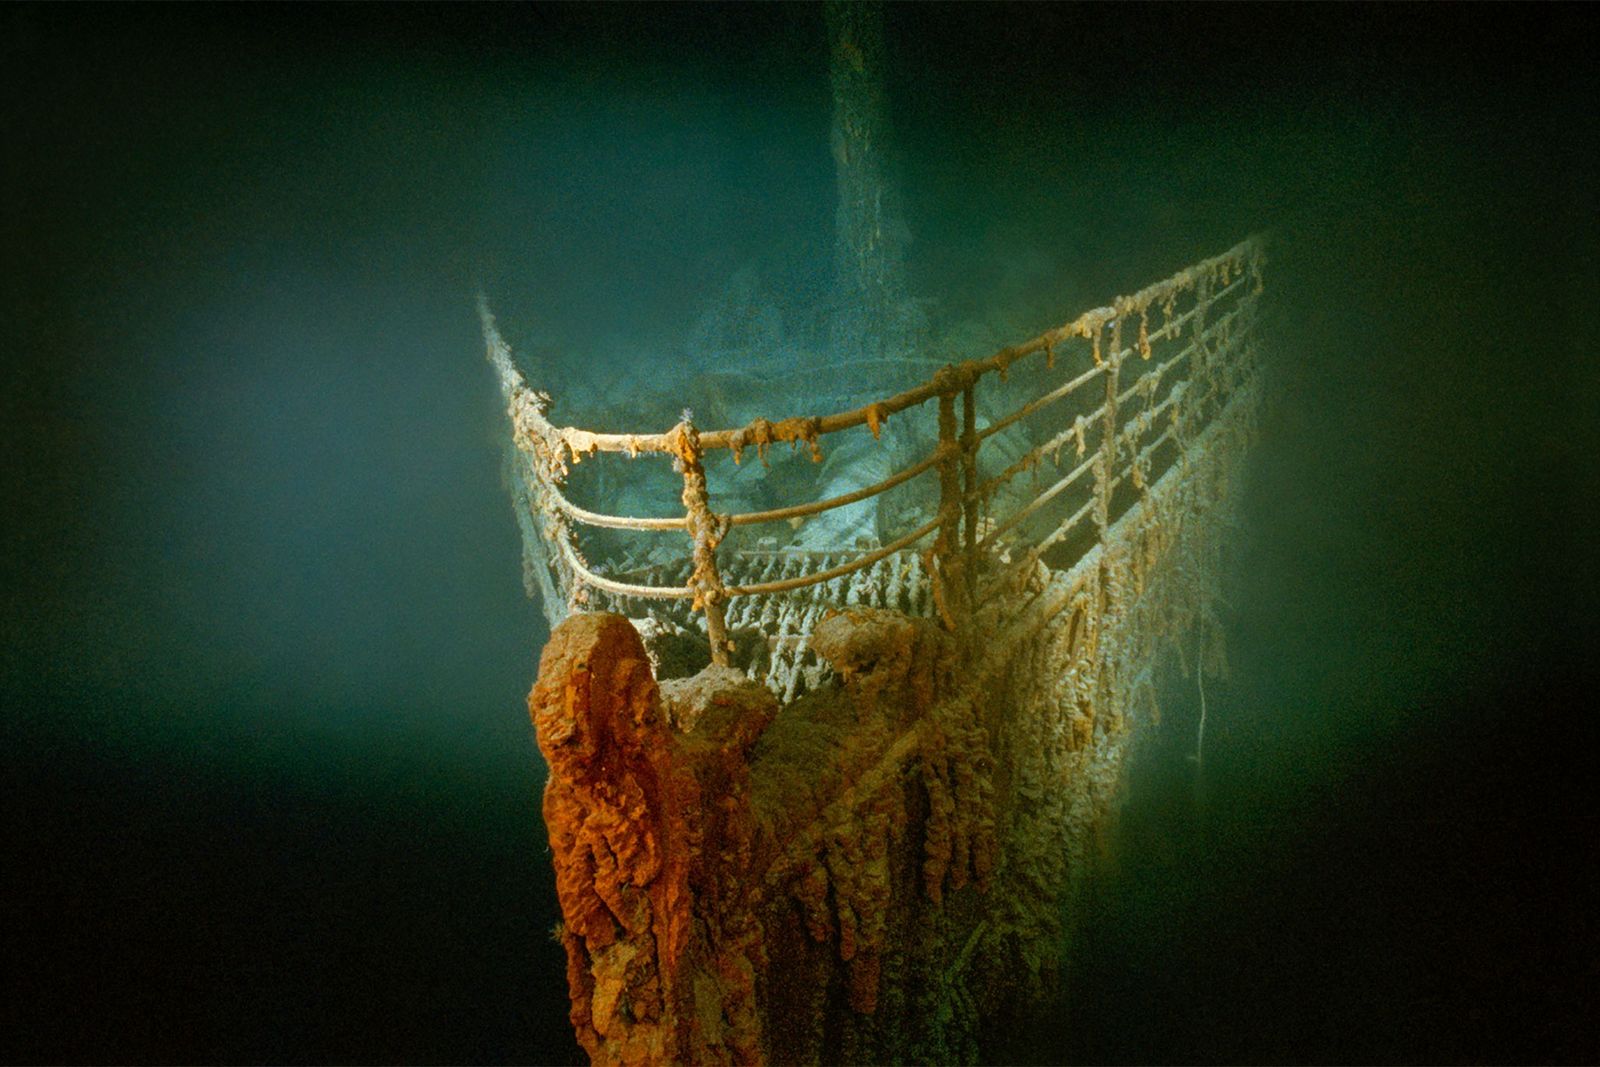 tesouros do titanic conheca alguns objetos famosos resgatados do naufragio.ghtml